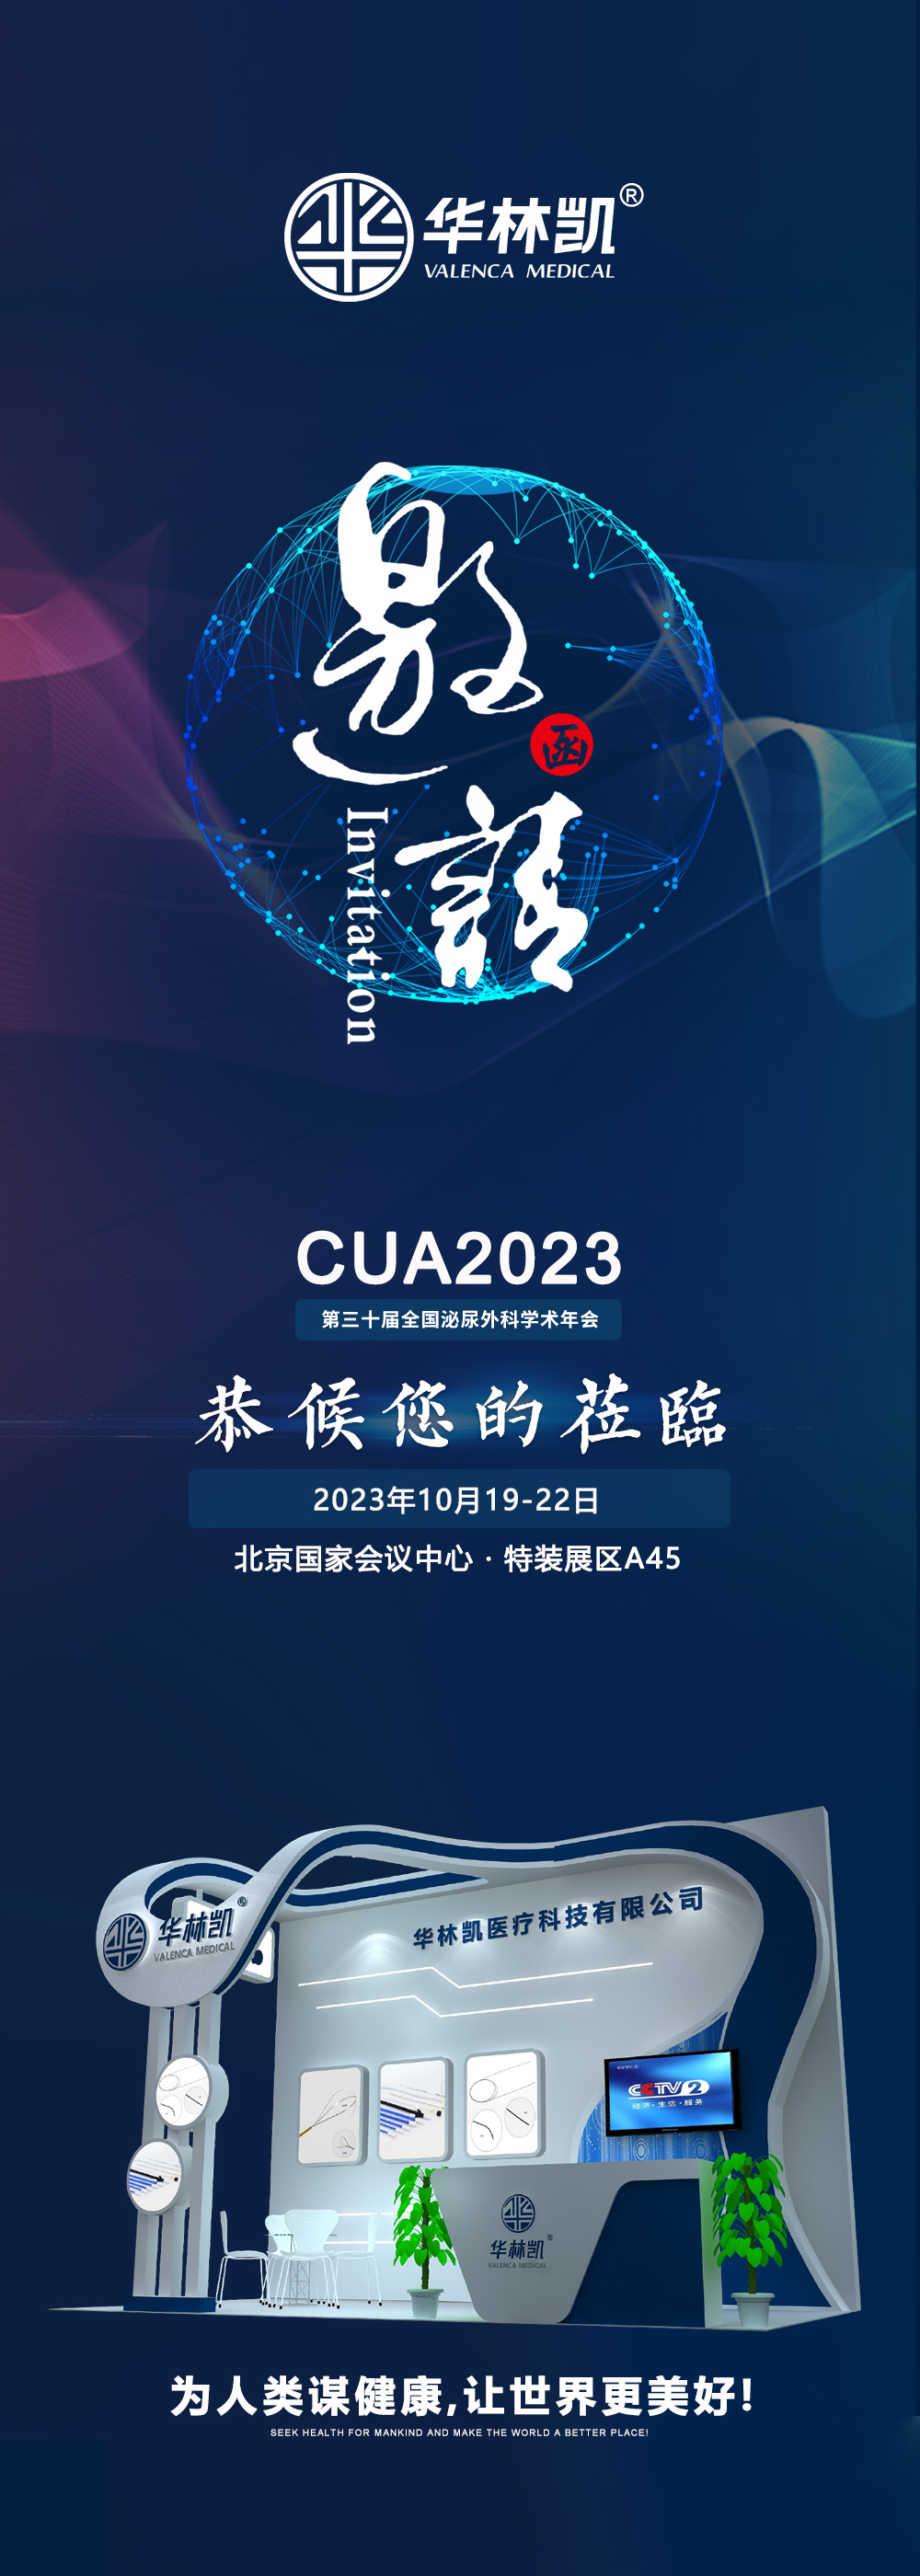 第三十届全国泌尿外科学术会议(CUA2023)展会邀请函